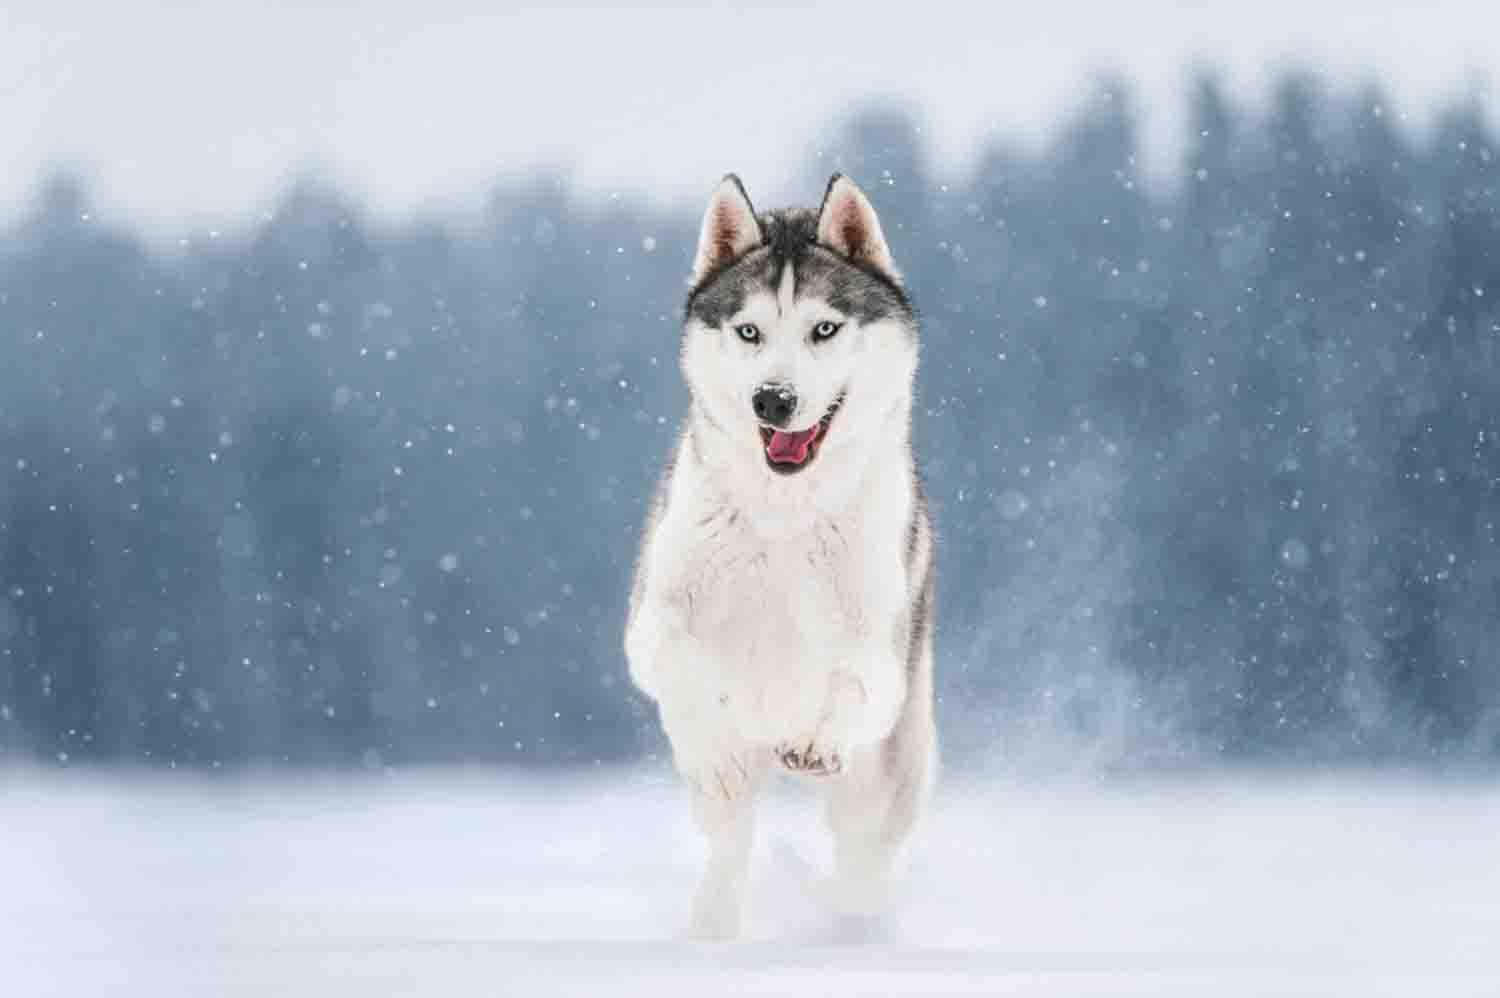 Imagende Un Lindo Husky Corriendo En La Nieve.